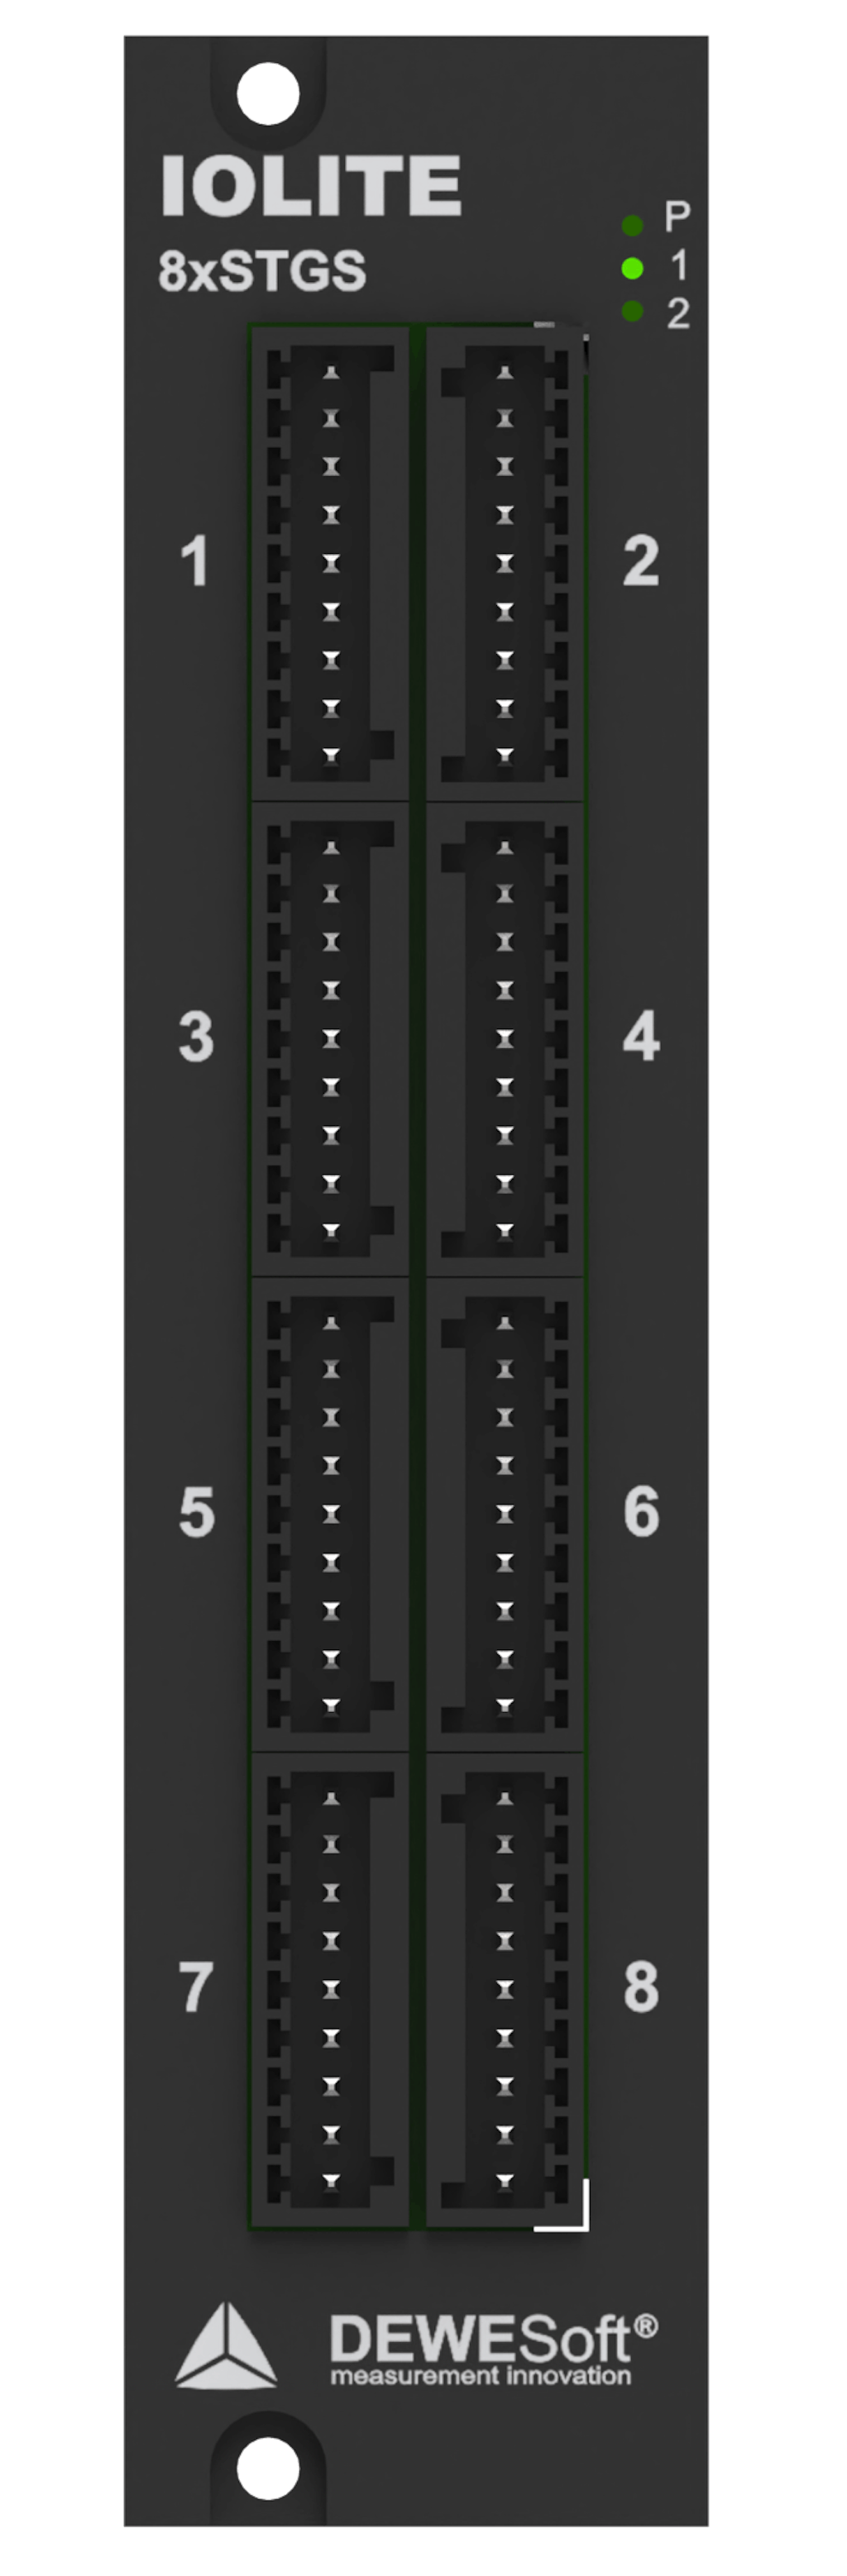 IOLITE-8xSTGS terminal block connector